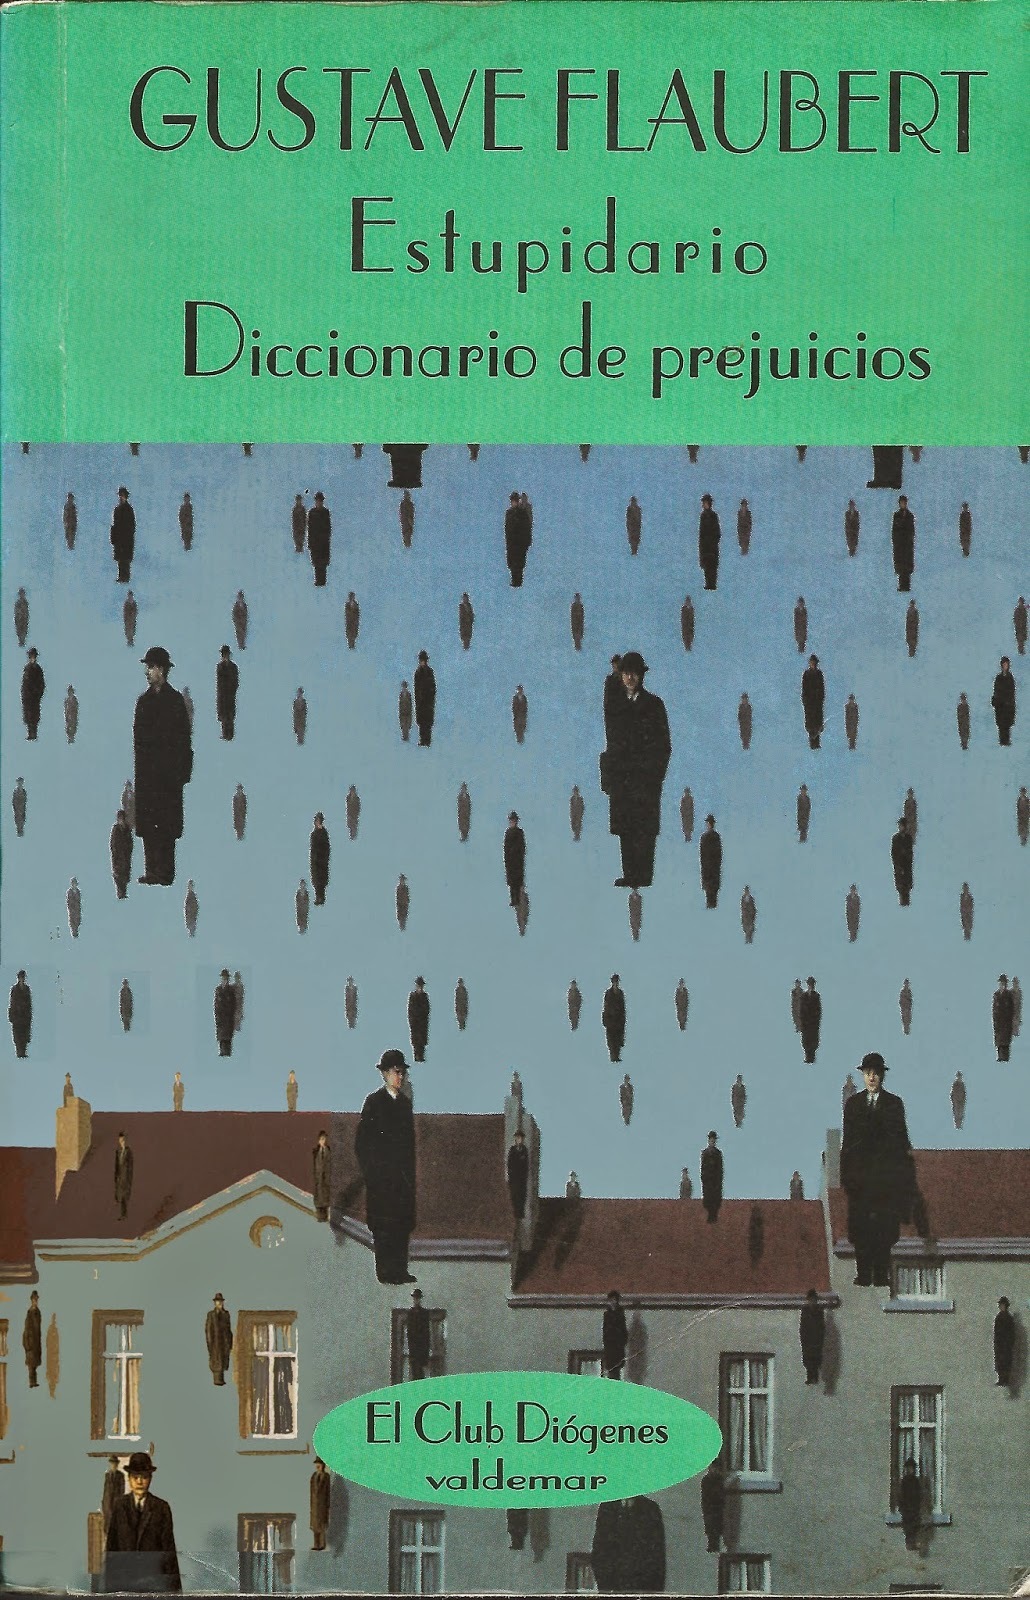 Gustave Flaubert: Estupidiario. Diccionario de Prejuicios. (Paperback, Español language, 1999, Valdermar)